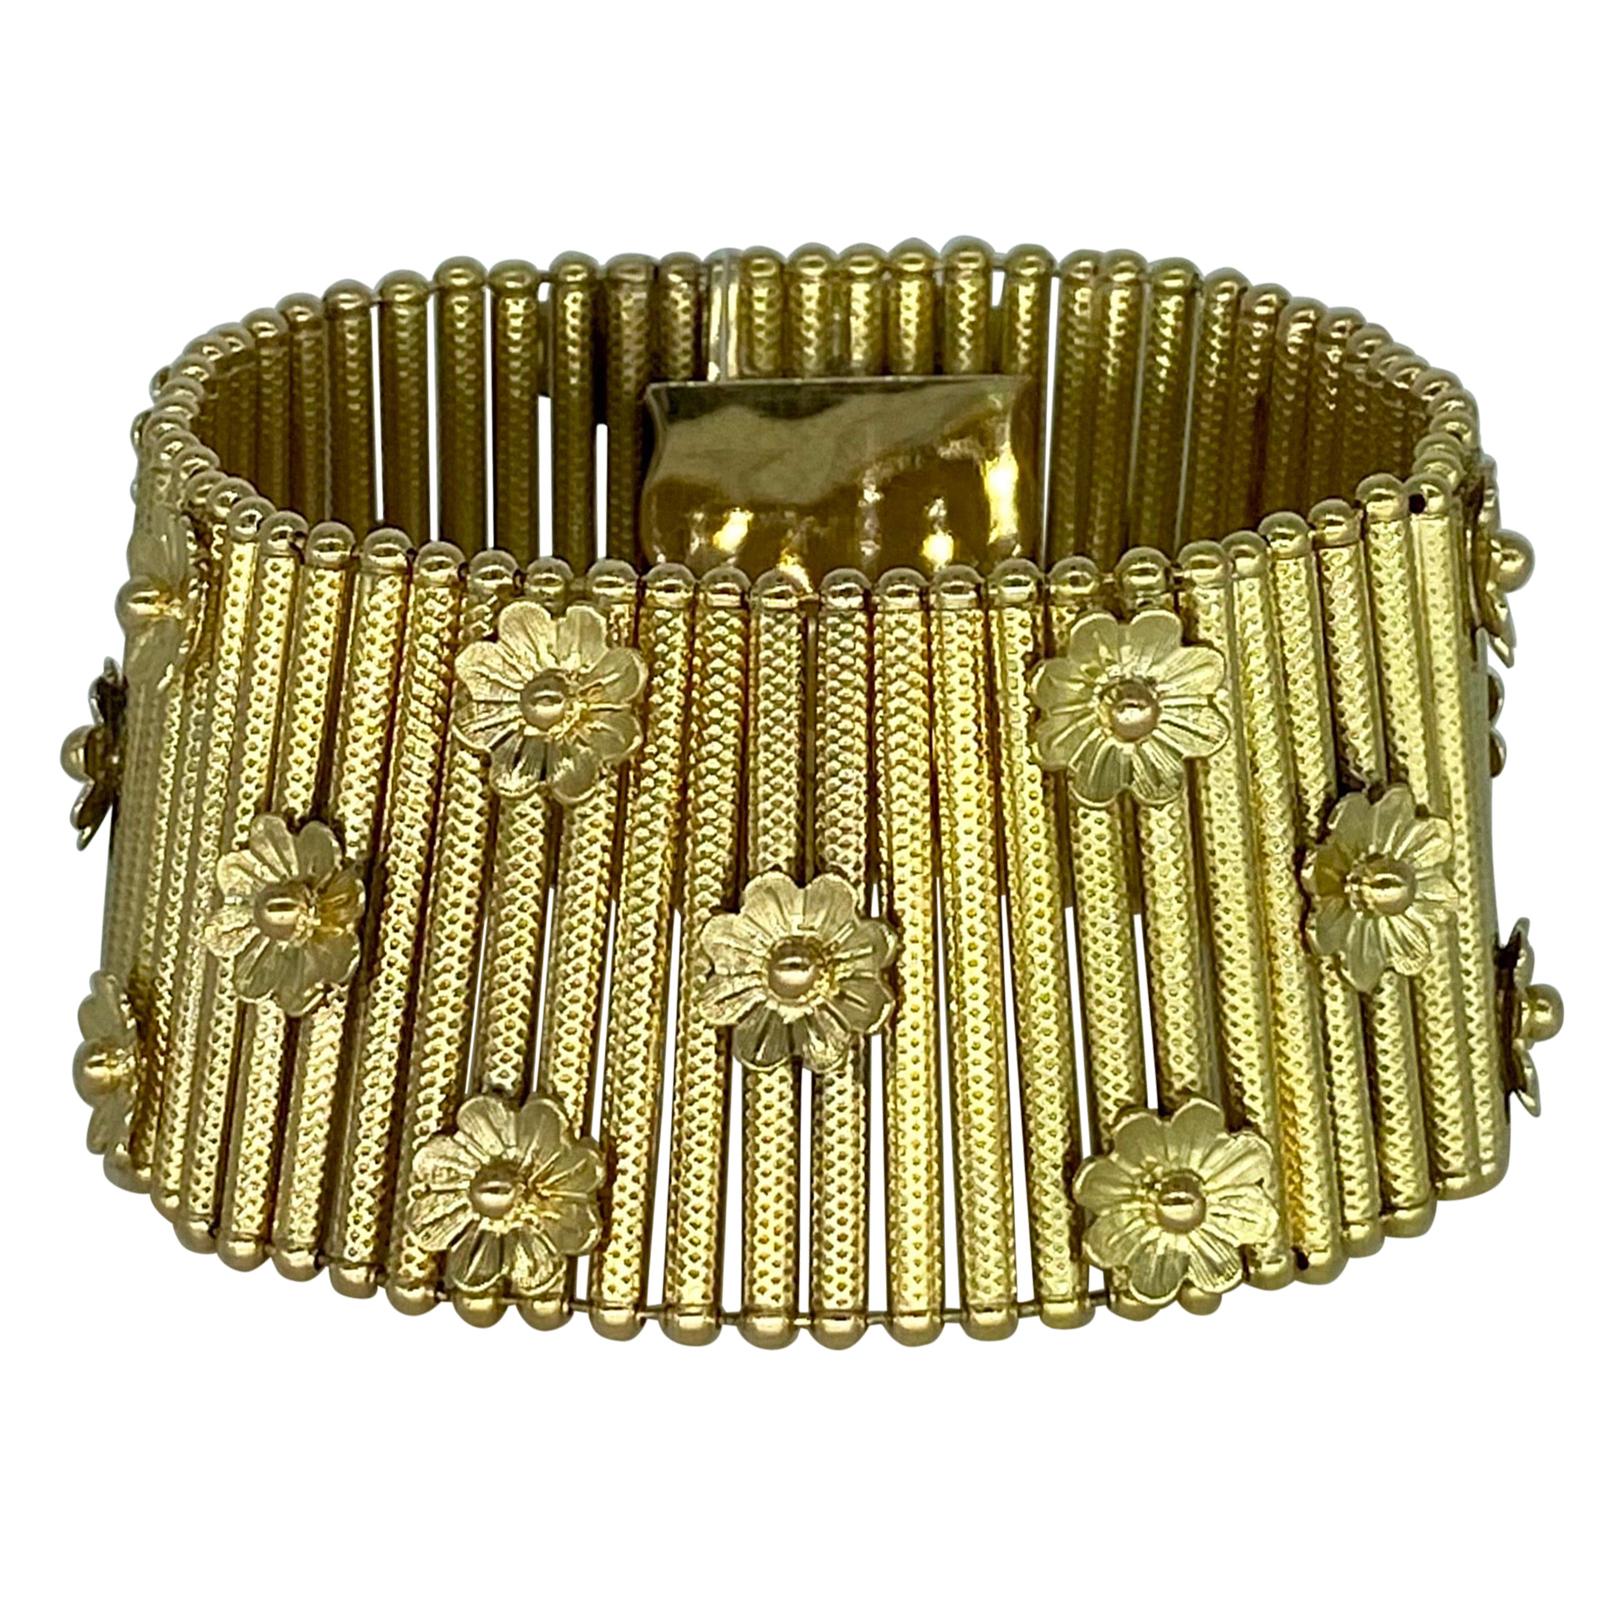 Share more than 156 gold bracelet italian design - ceg.edu.vn